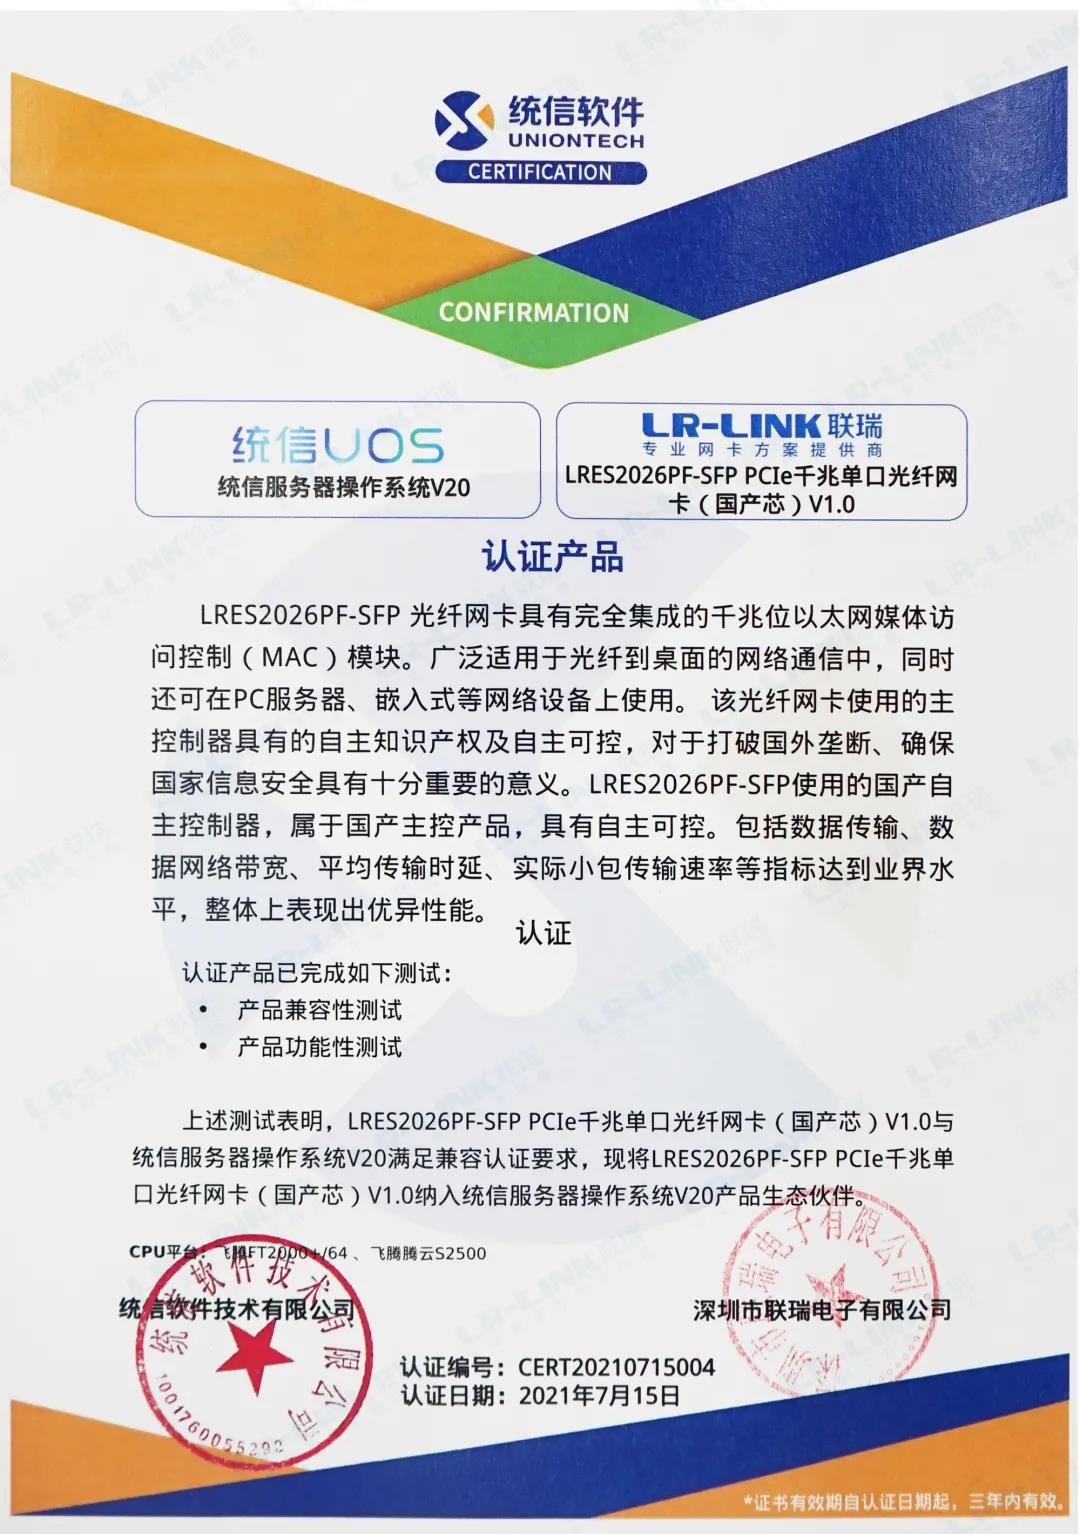 支持国产化进程，LR-LINK联瑞与统信UOS完成产品兼容认证